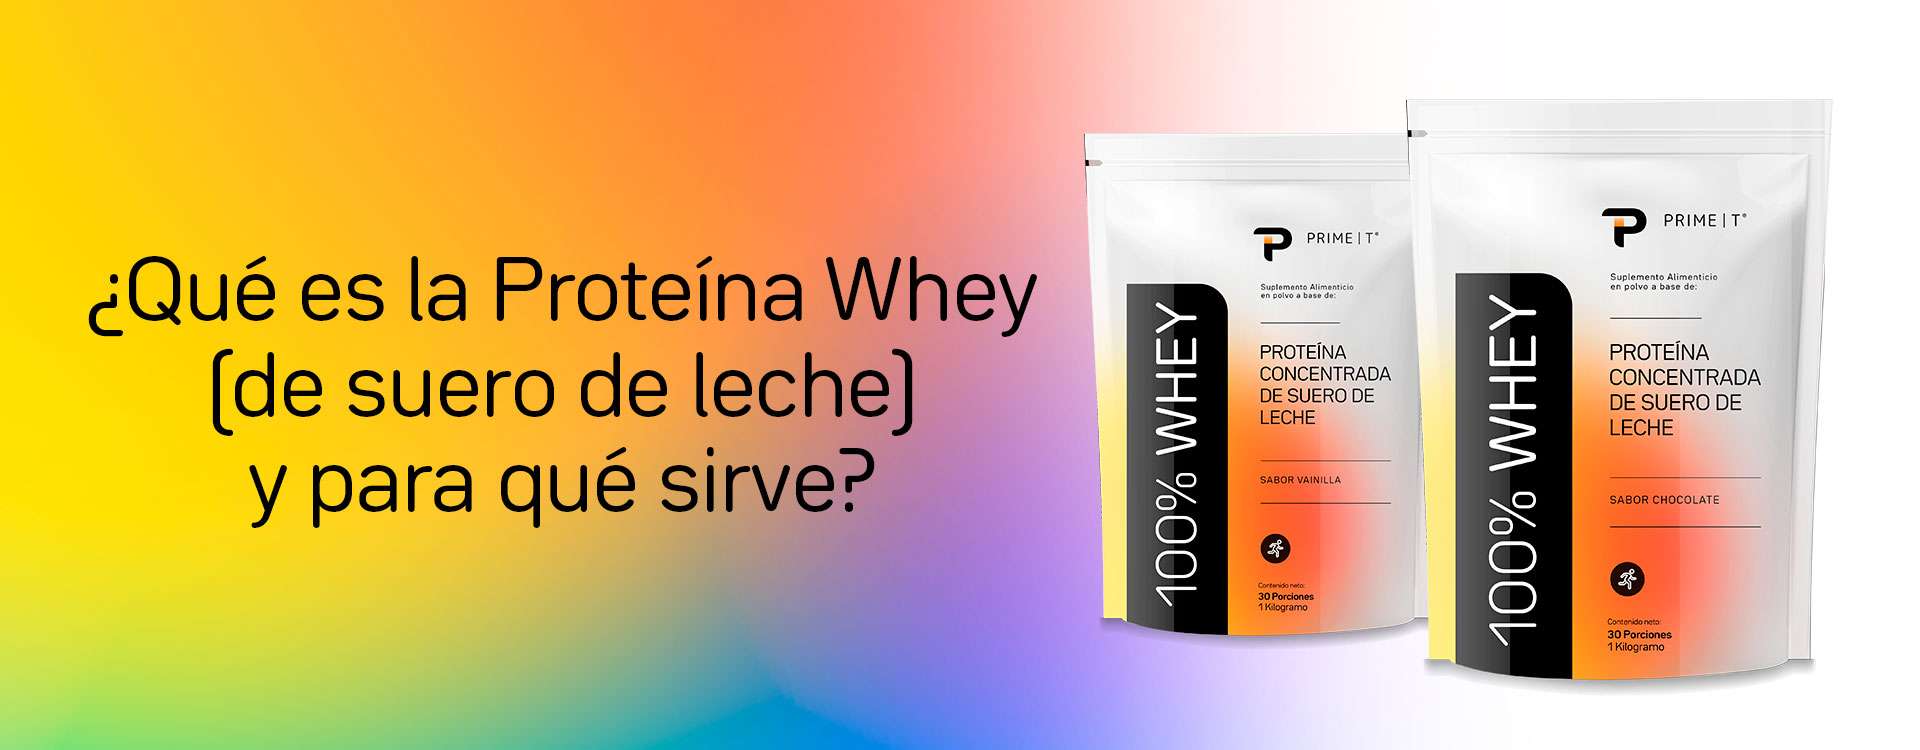 ¿Qué es la Proteína Whey (de suero de leche) y para qué sirve?